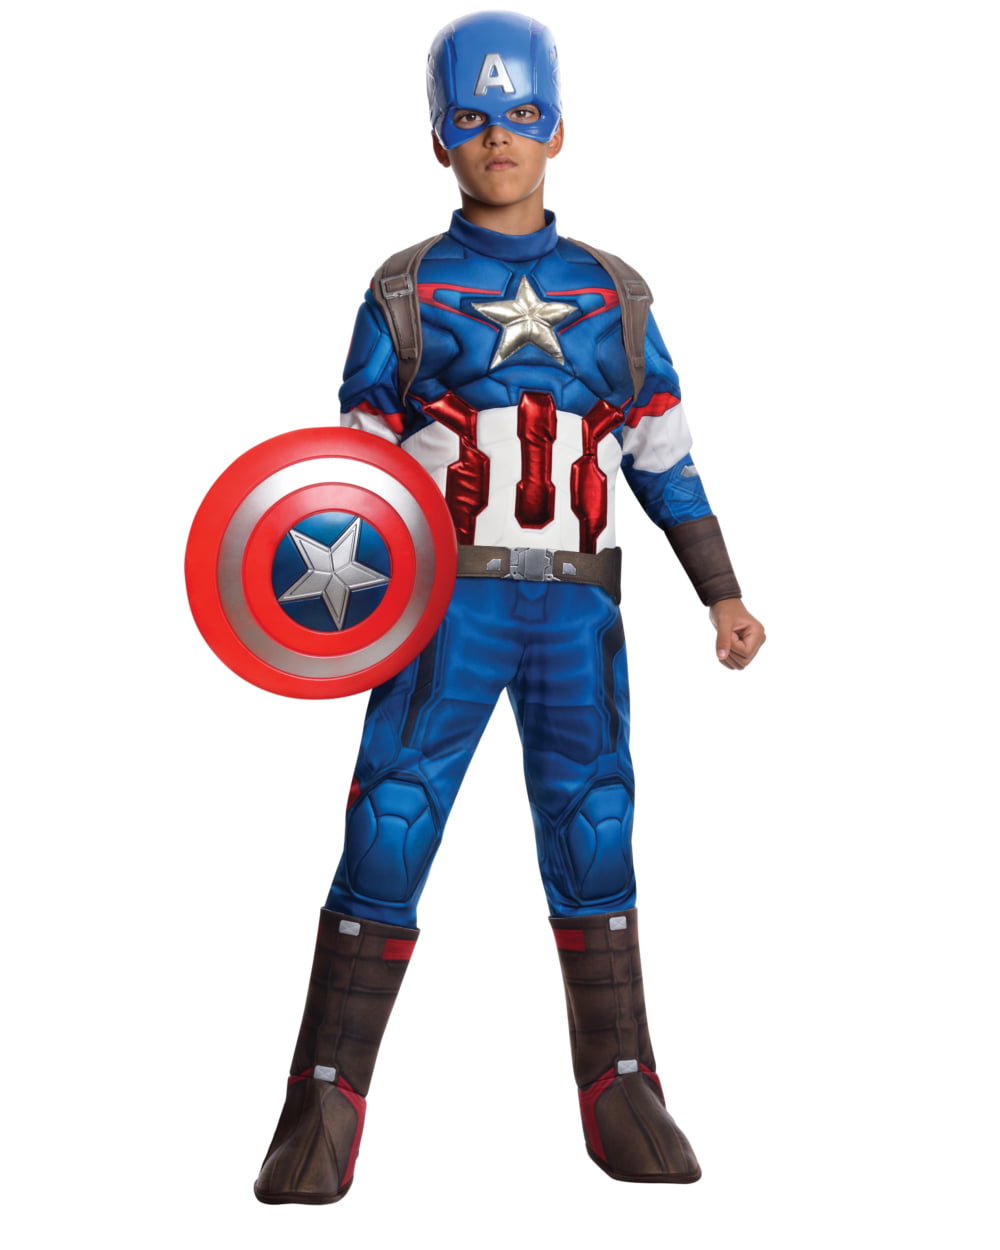 Costume enfant Captain America Marvel luxe rembourré